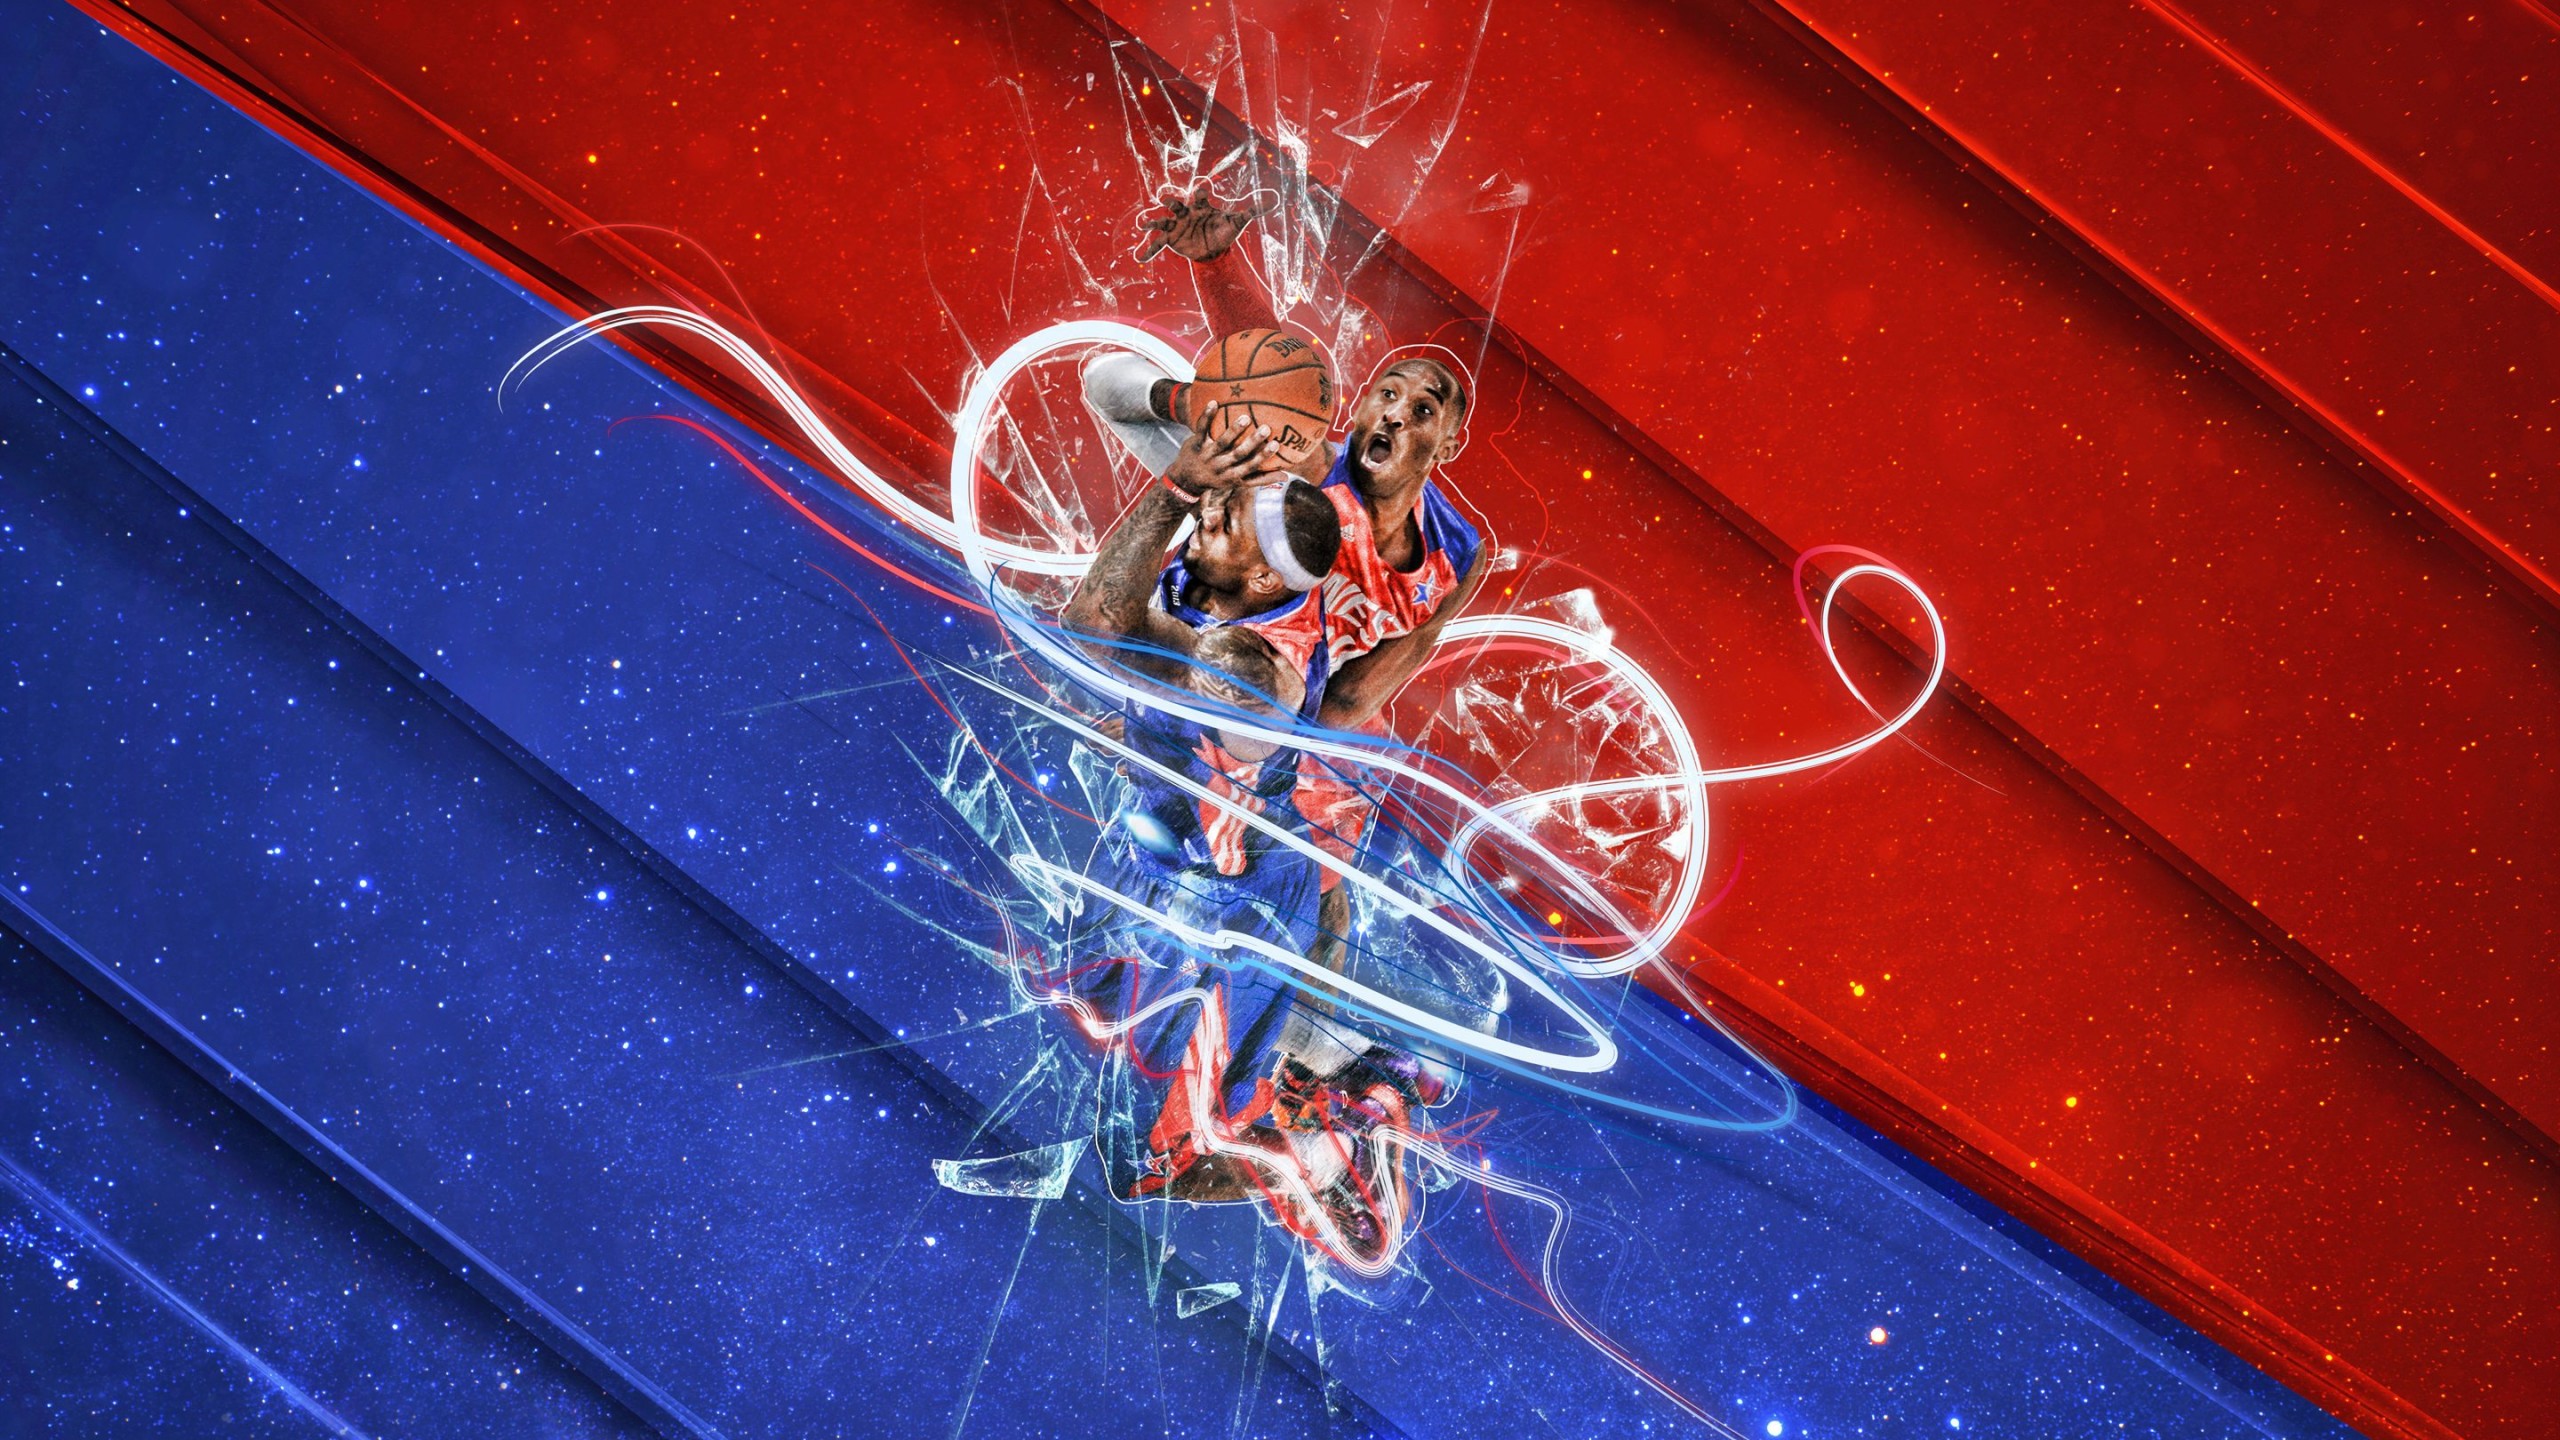 LeBron James Vs Kobe Bryant - NBA - Basketball Wallpaper for Social Media YouTube Channel Art